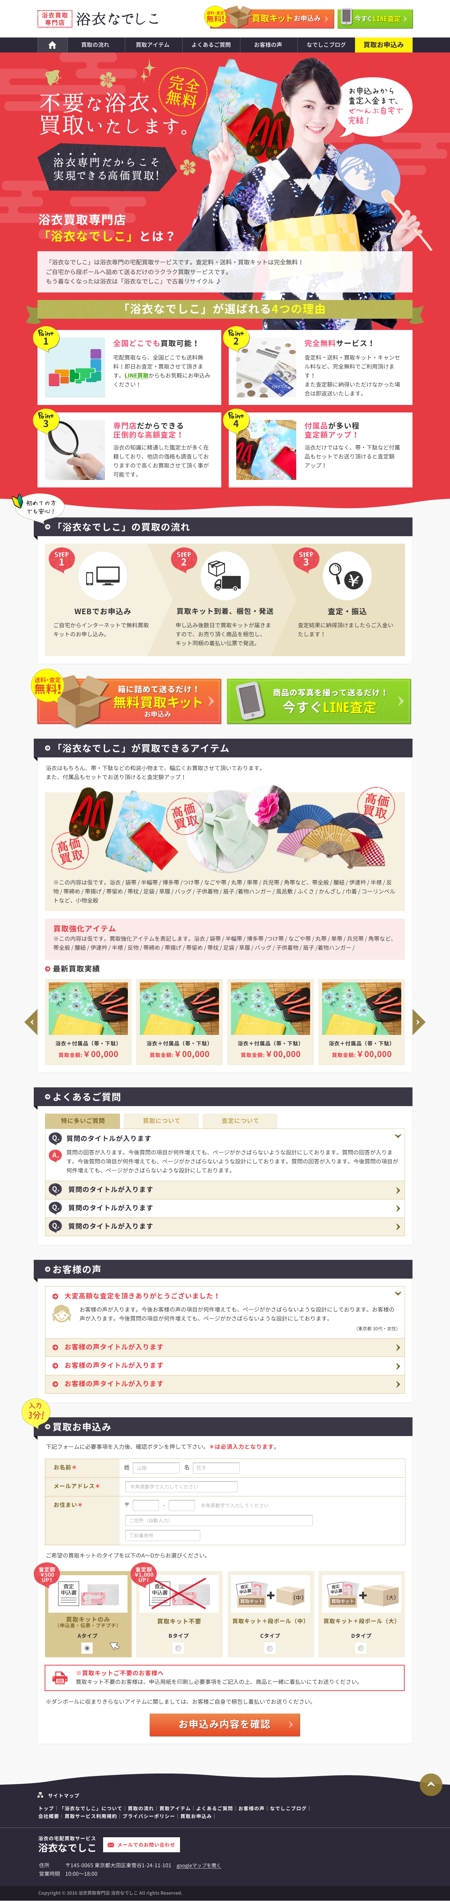 kato (s_kato)さんの新しいサイトのWEBデザイン 【浴衣の買取サイト】買取ページへの提案